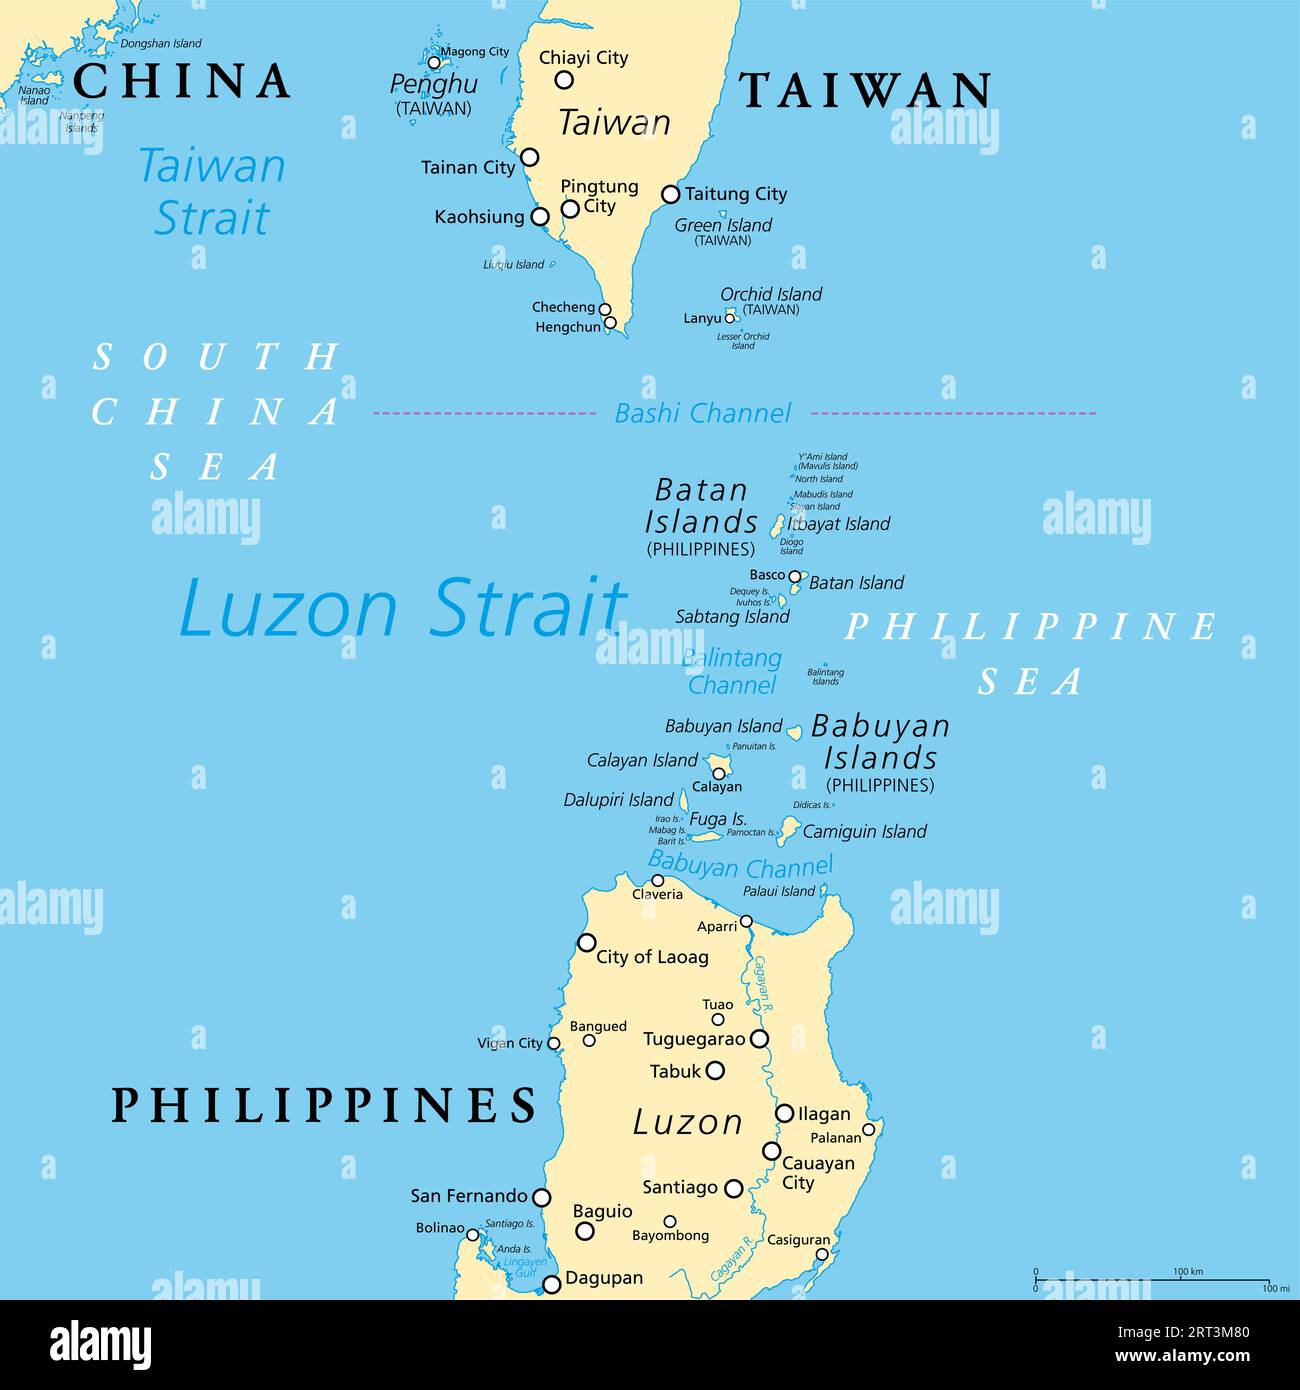 Luzon Strait, mappa politica. Stretto tra Luzon e Taiwan, che collega il Mar delle Filippine al Mar Cinese meridionale nell'Oceano Pacifico occidentale. Foto Stock